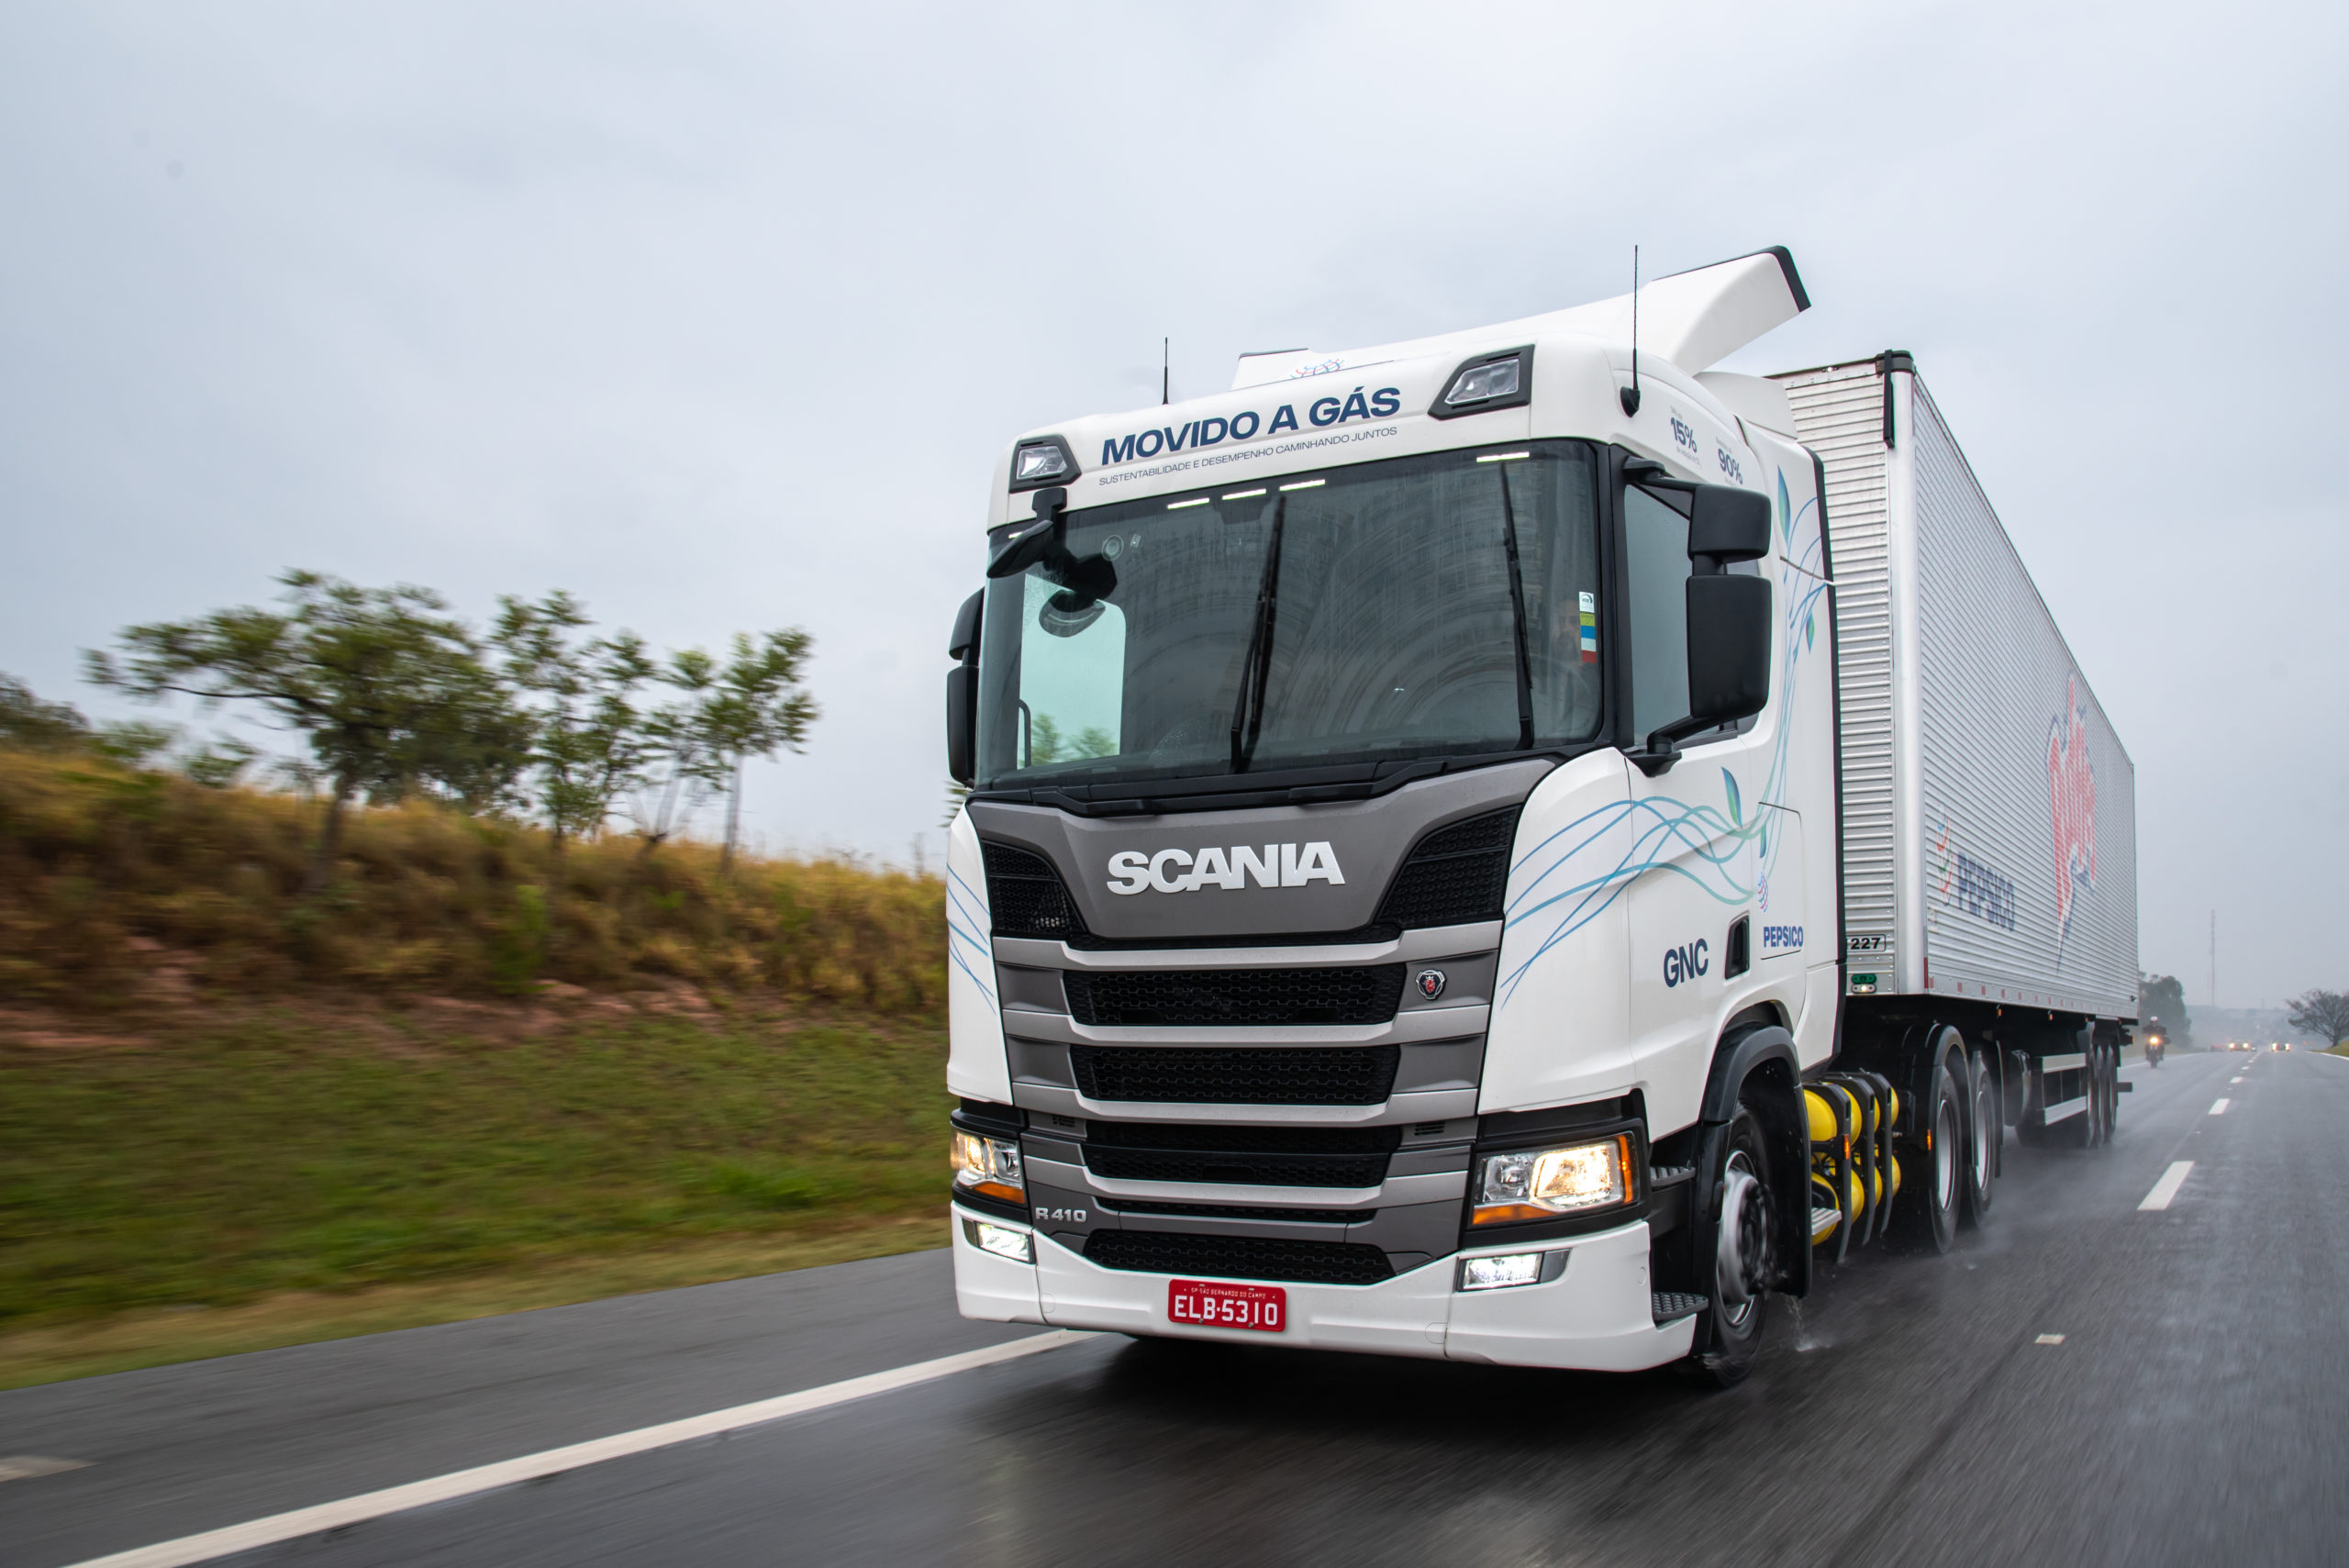 De olho no biometano, Scania ampliará oferta de caminhões a gás no Brasil. Na imagem: Caminhão da Scania em operação da Pepsico (Foto: Divulgação/Scania)